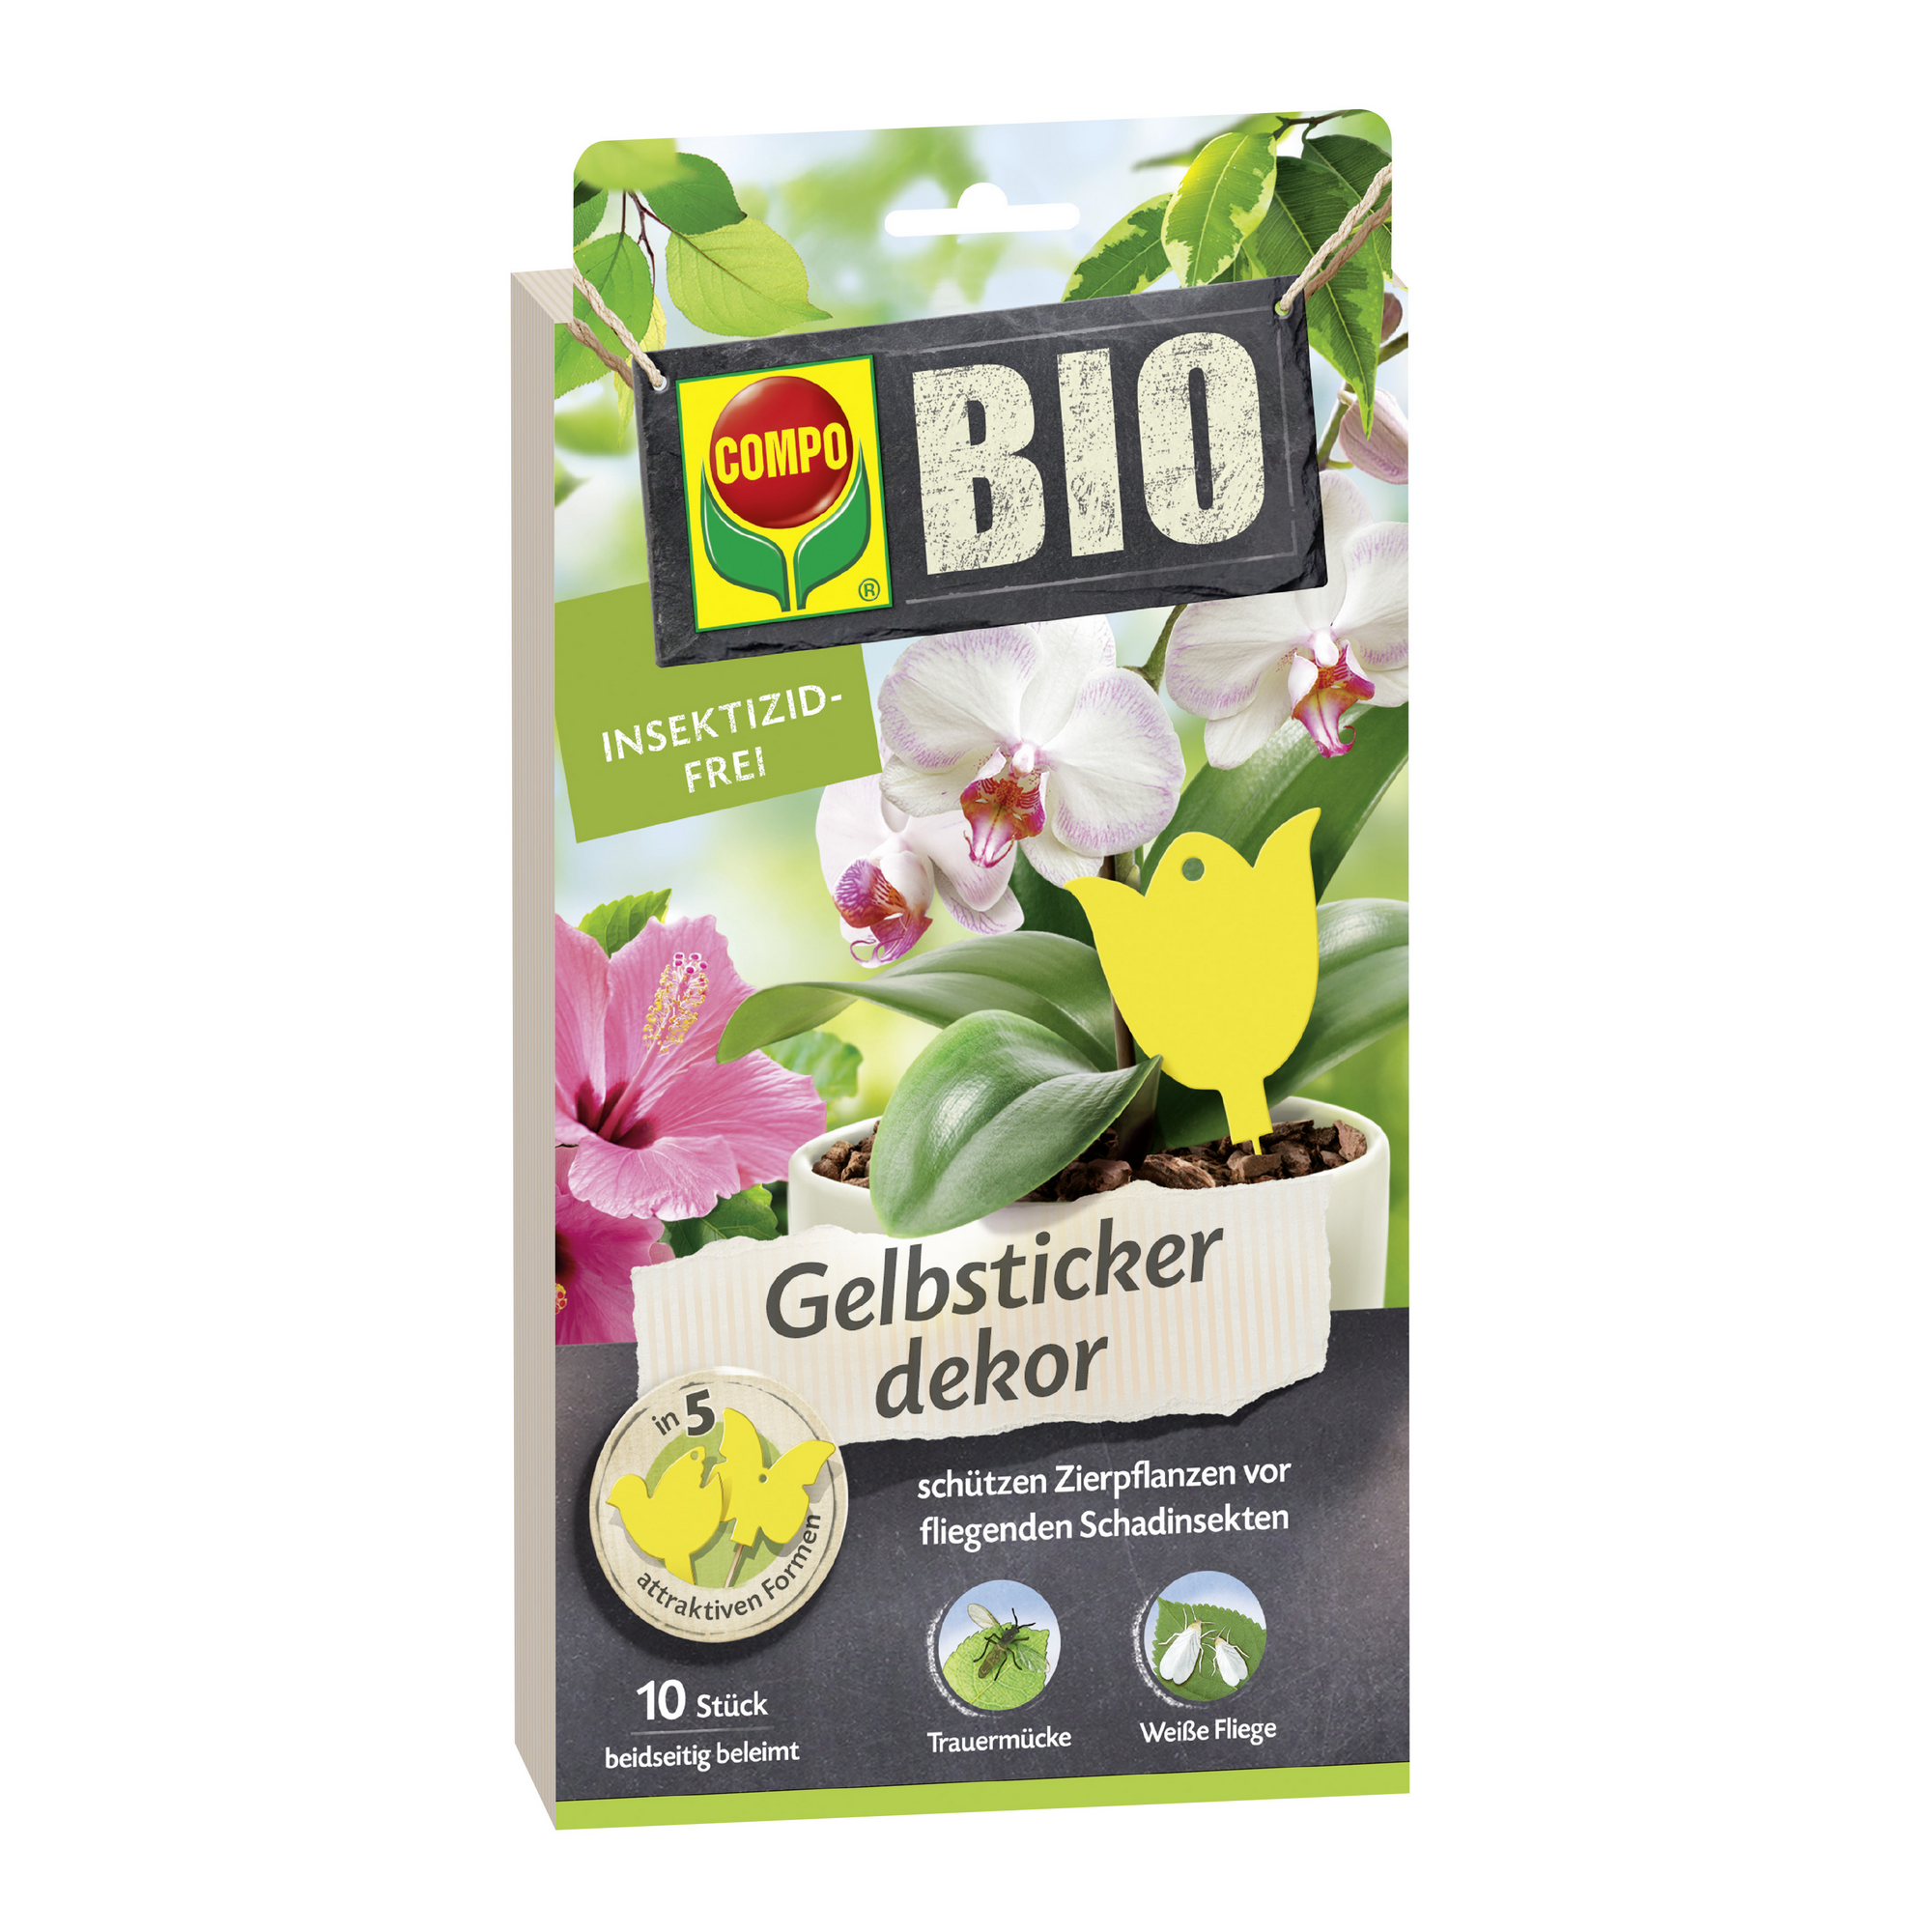 Bio-Gelbsticker mit Dekor 10 Stück + product picture